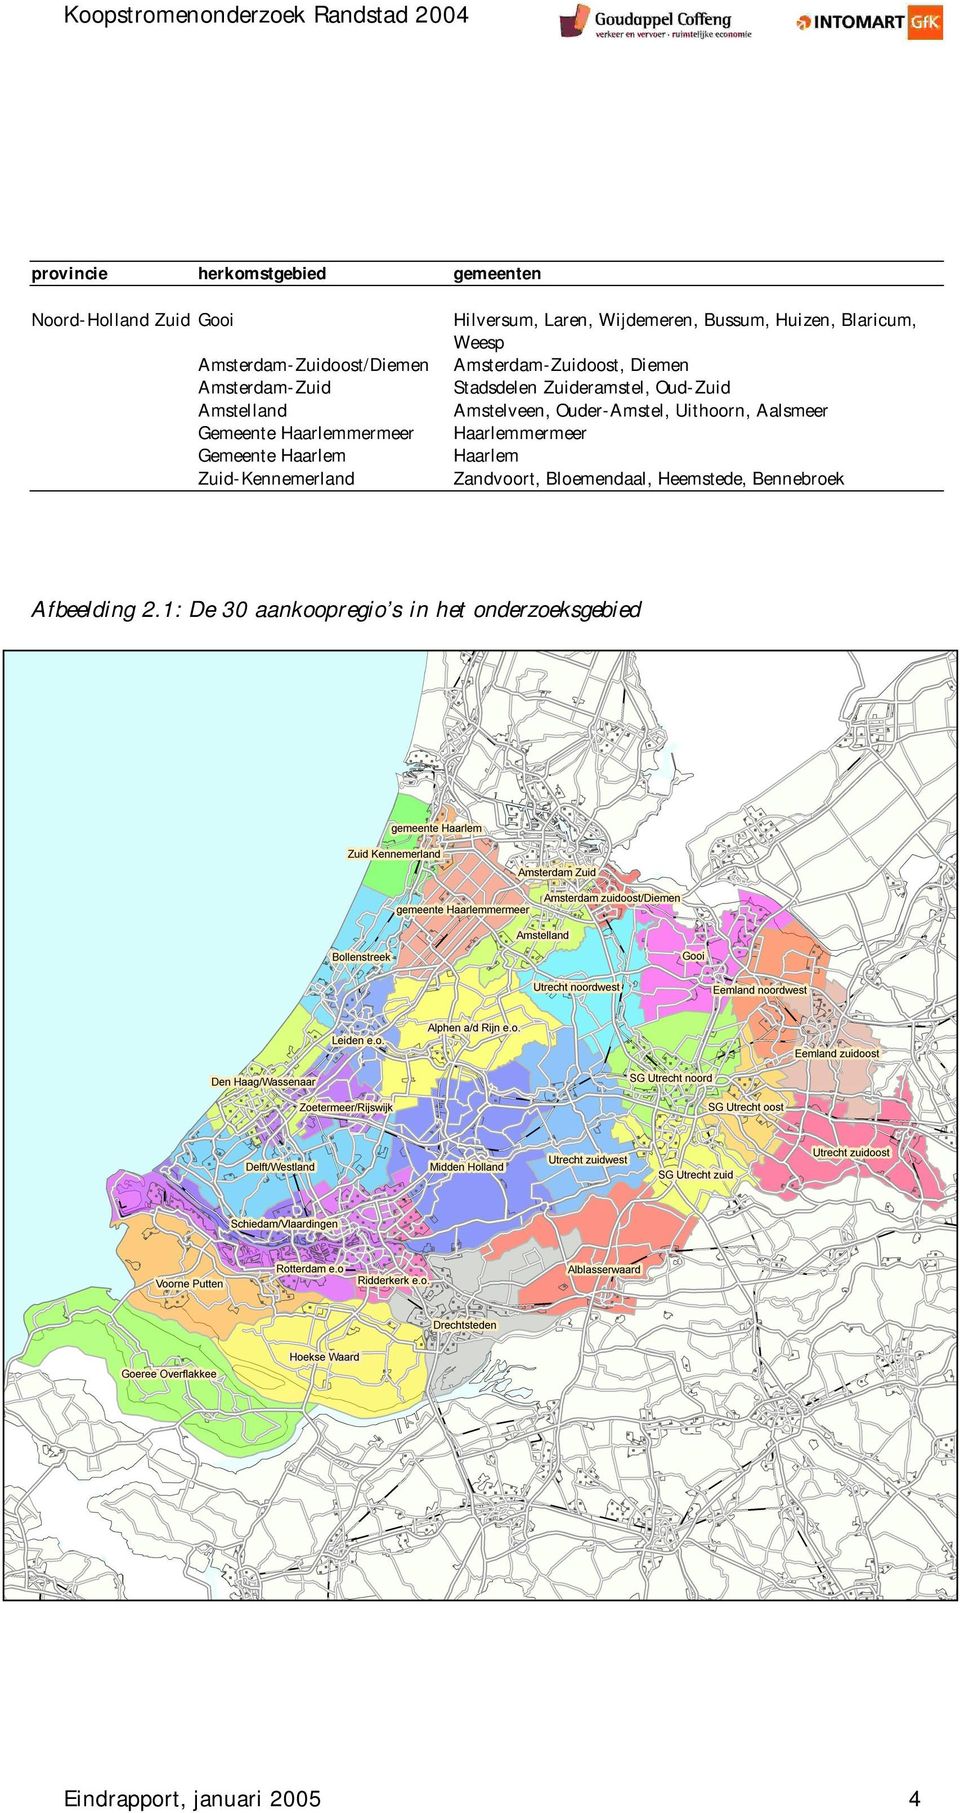 Blaricum, Weesp Amsterdam-Zuidoost, Diemen Stadsdelen Zuideramstel, Oud-Zuid Amstelveen, Ouder-Amstel, Uithoorn, Aalsmeer